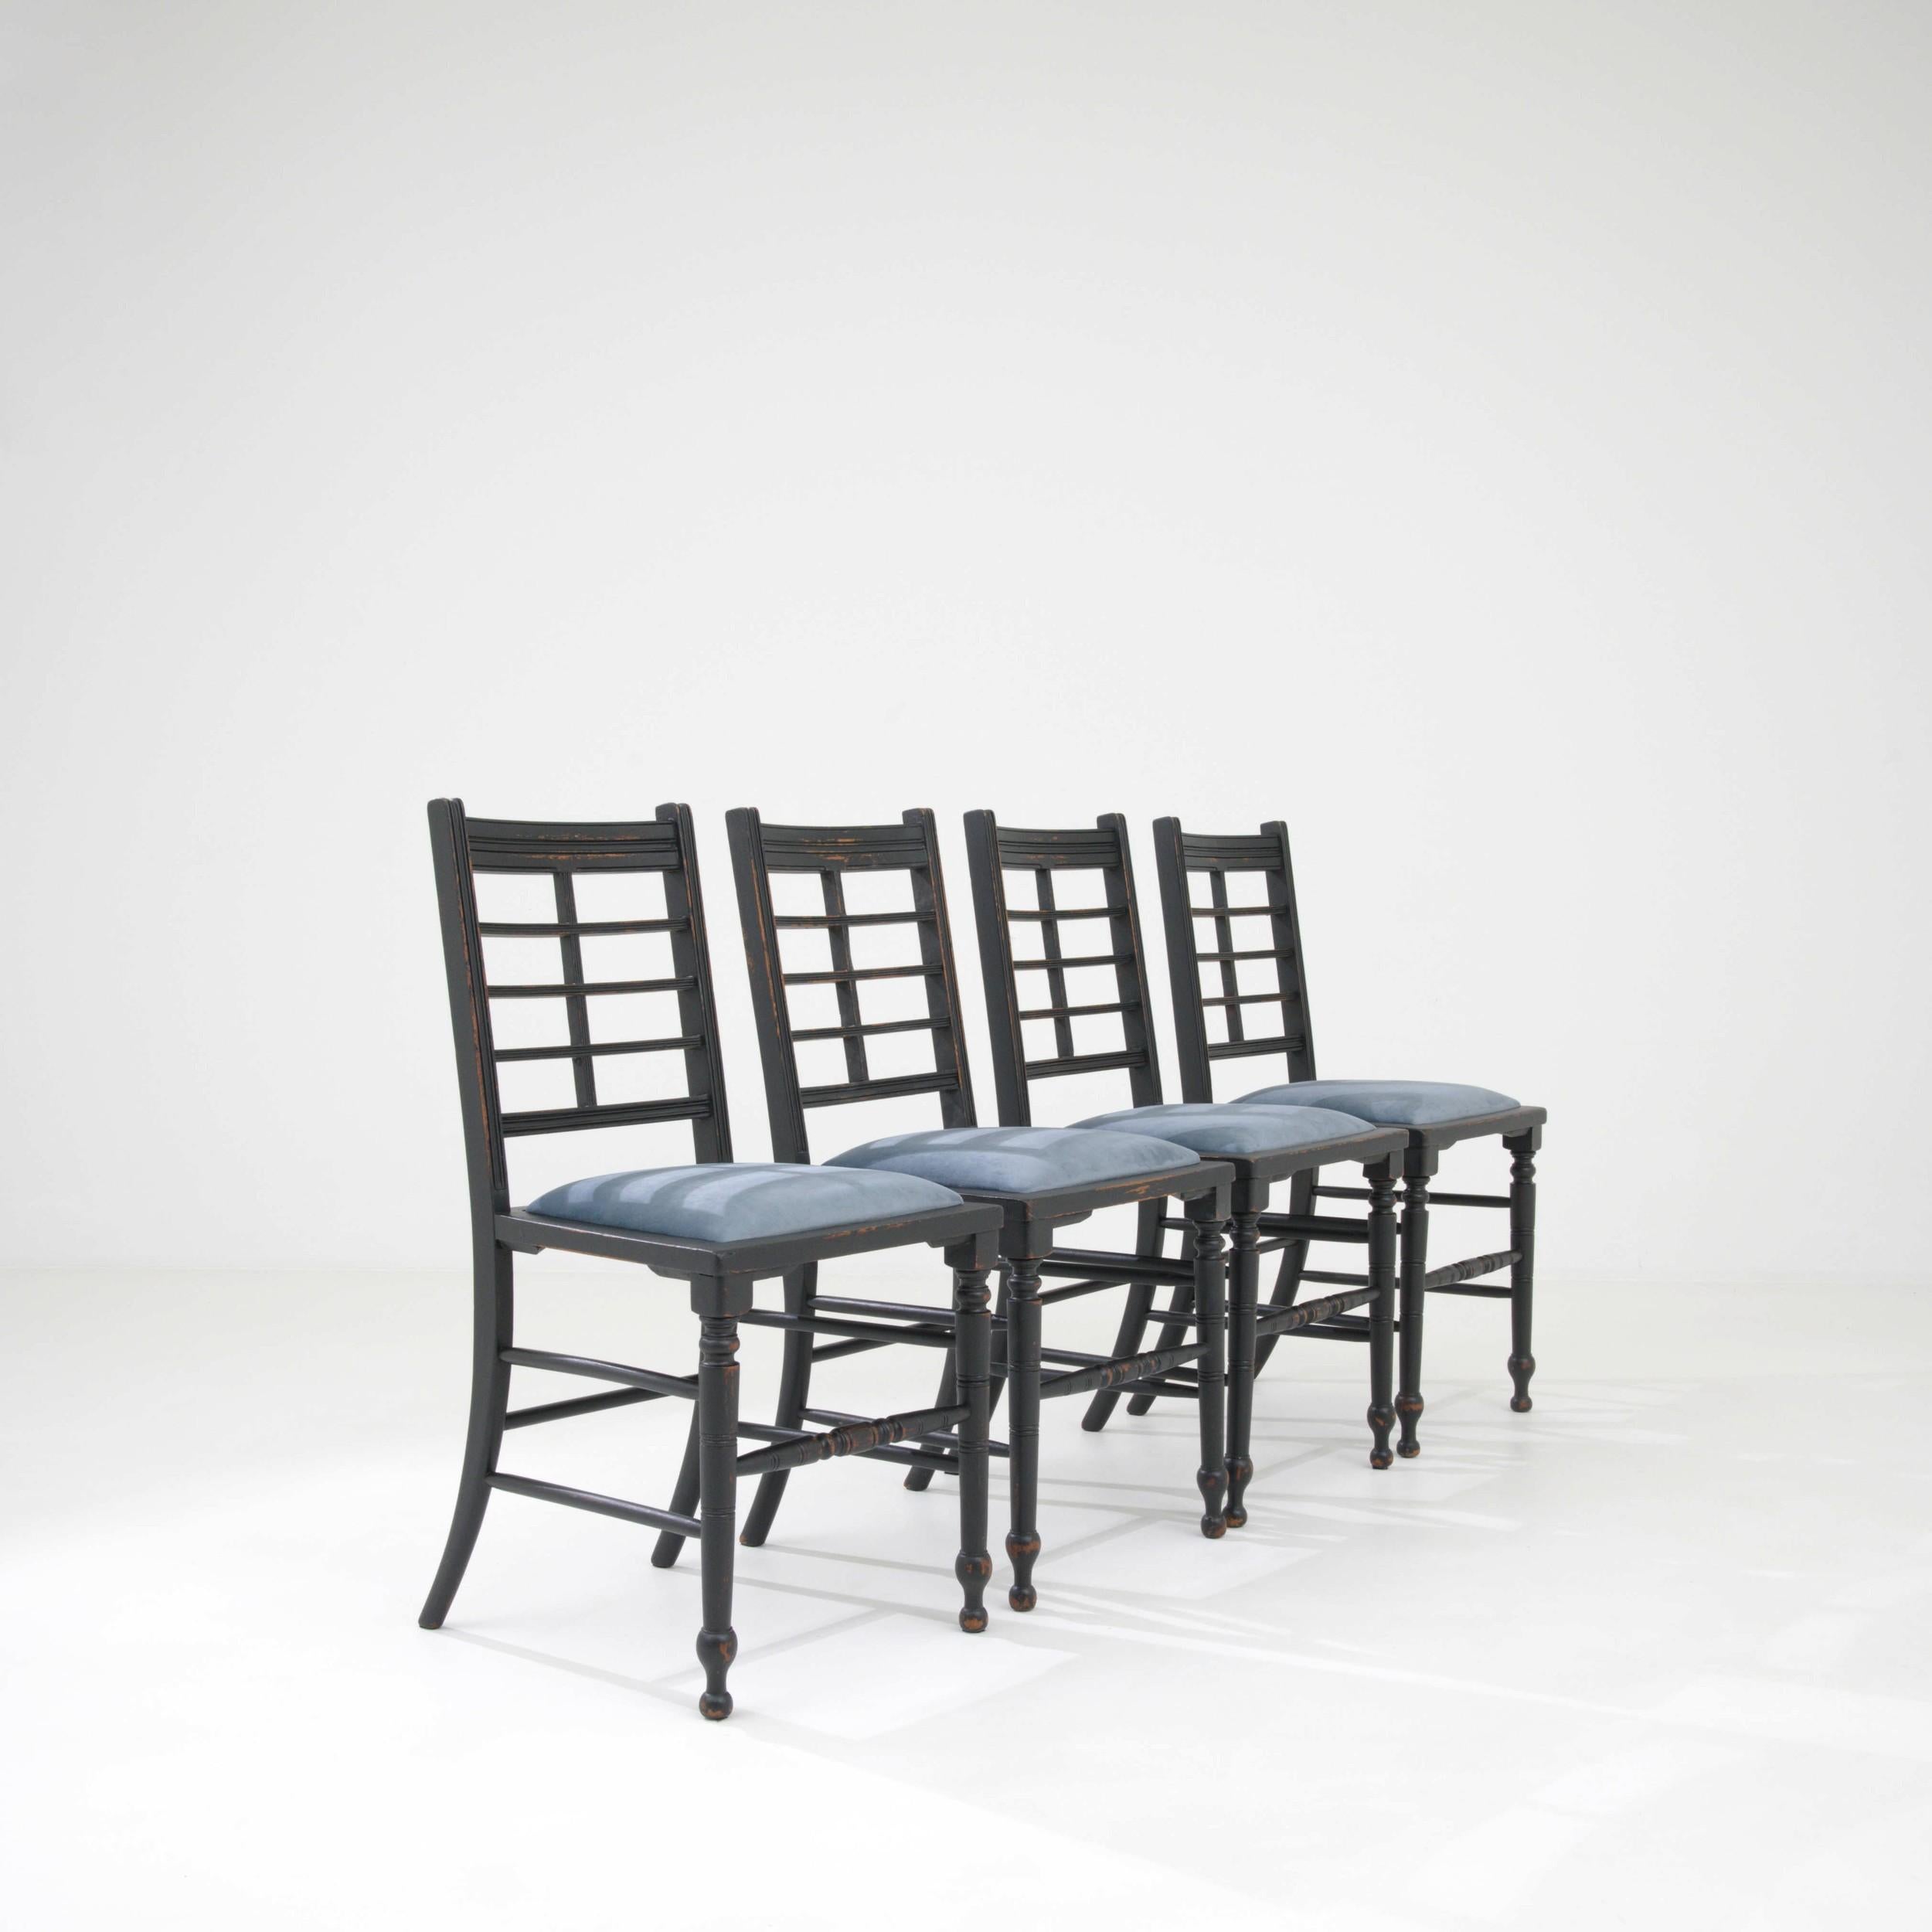 Fabriqué au Royaume-Uni au XIXe siècle, cet ensemble de quatre chaises est en bois et comporte un coussin rembourré. Finies en noir, le style raffiné de ces chaises les prête à la salle à manger, ou seules comme accent visuel. Le design se